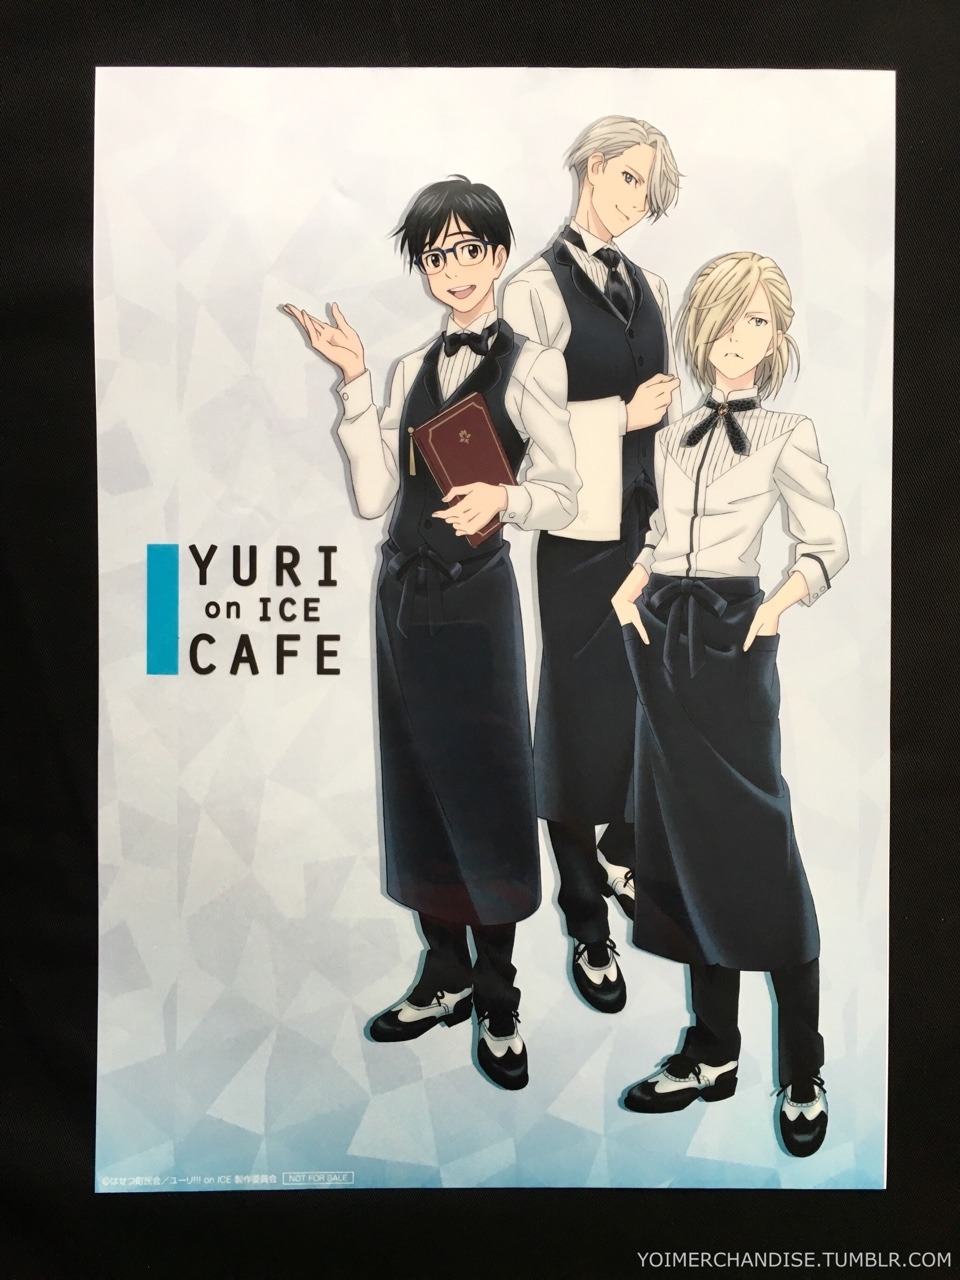 yoimerchandise:  YOI x Avex Pictures Yuri on ICE Cafe (2017) Merchandise Original